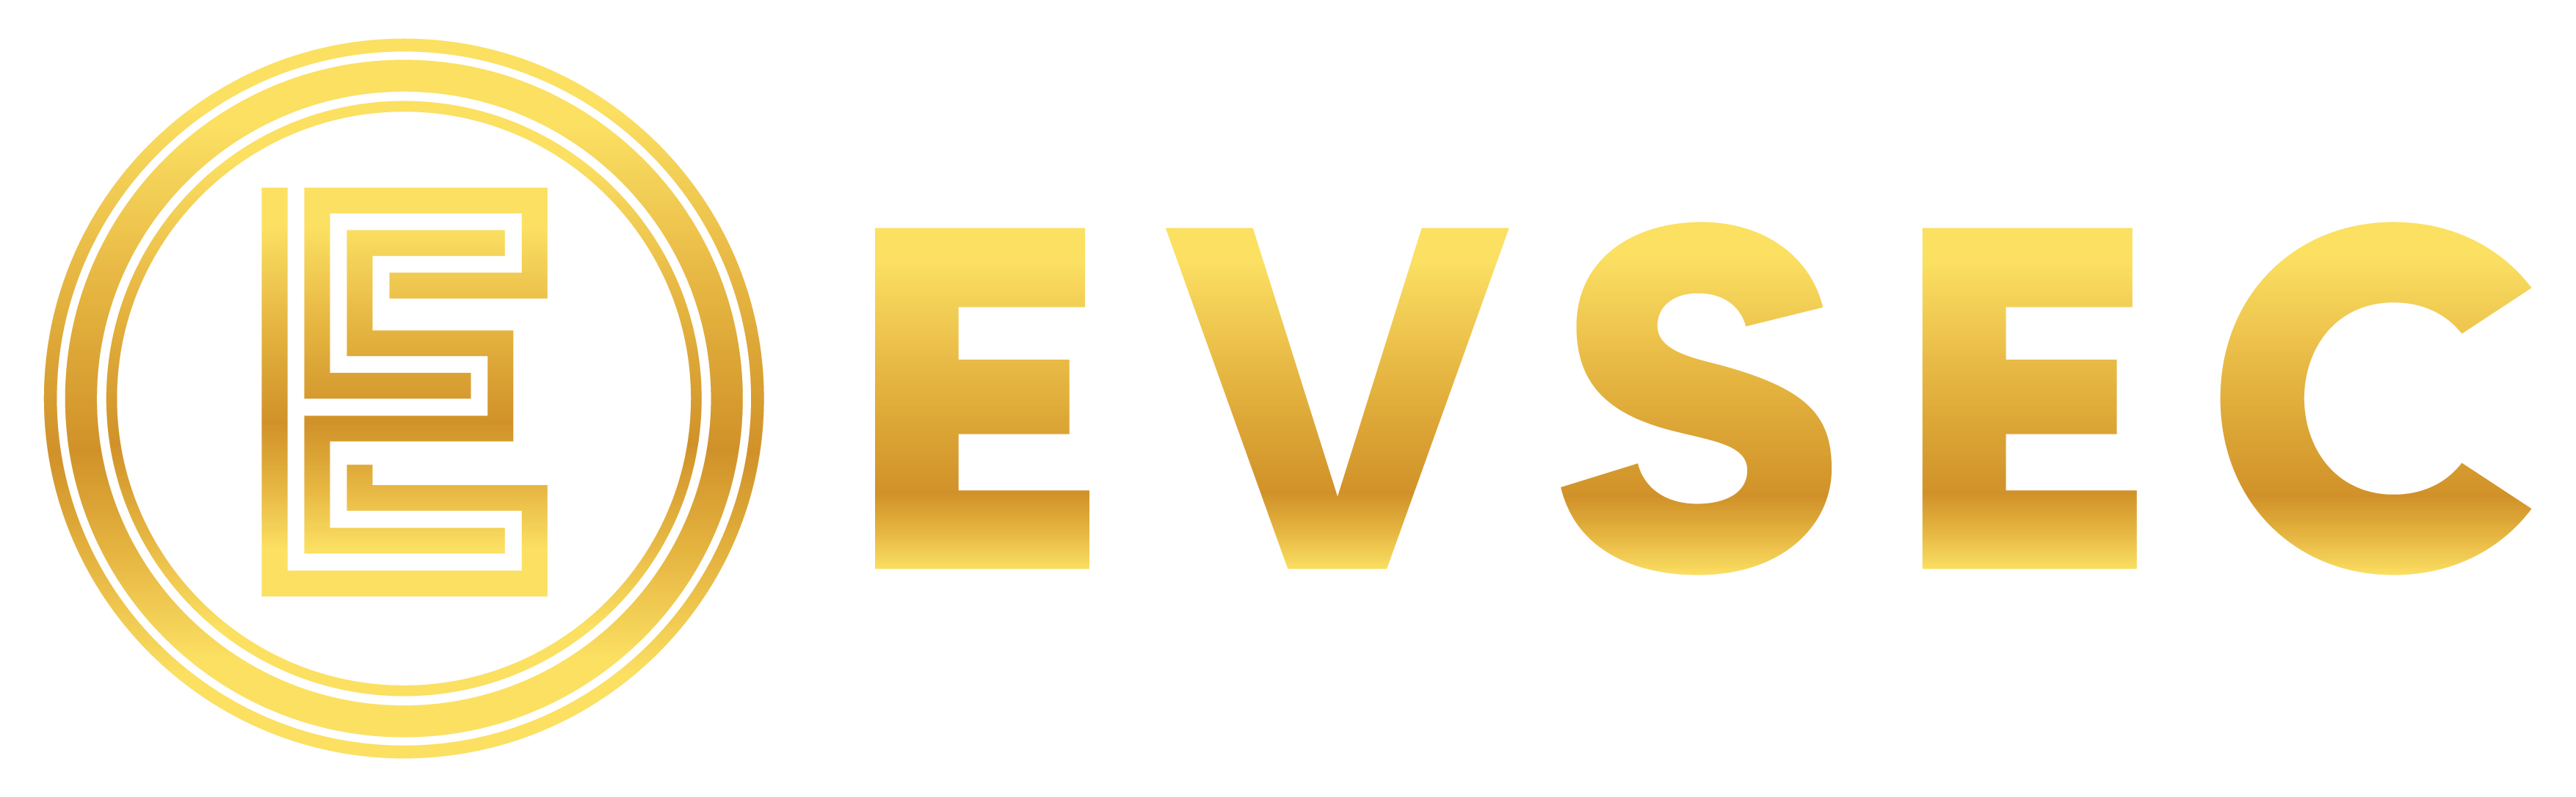 Evsec logo-01-01